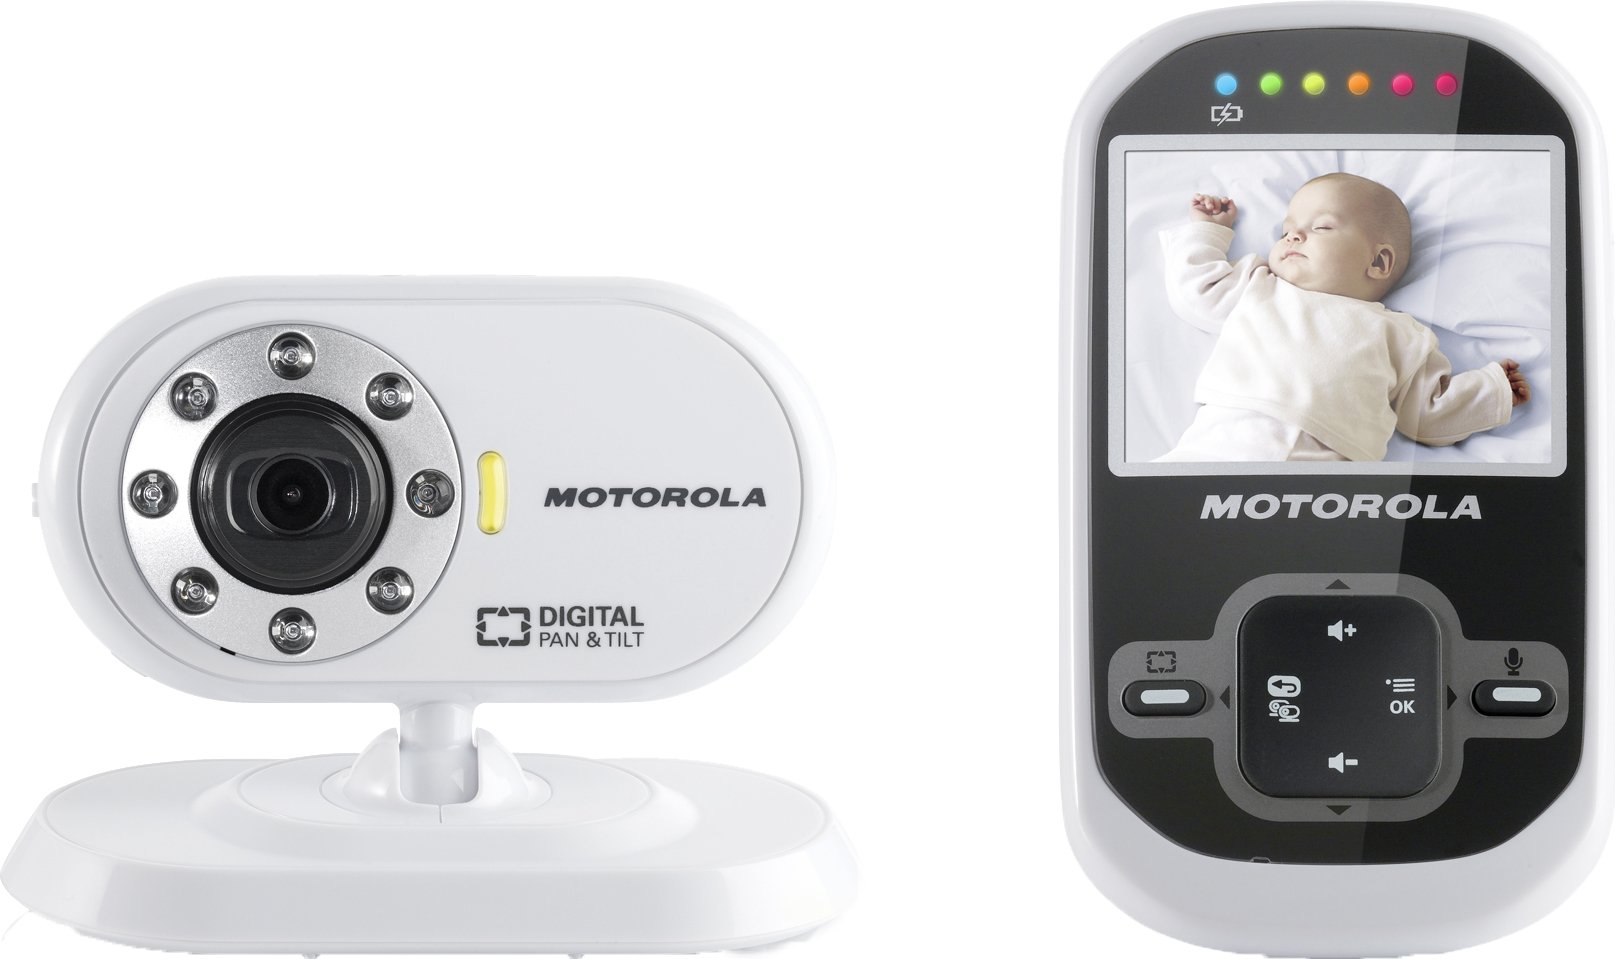 Motorola MBP 26 - Video Babyphone mit 2.4 Zoll Farbdisplay und bis zu 300 Meter Reichweite, weiß